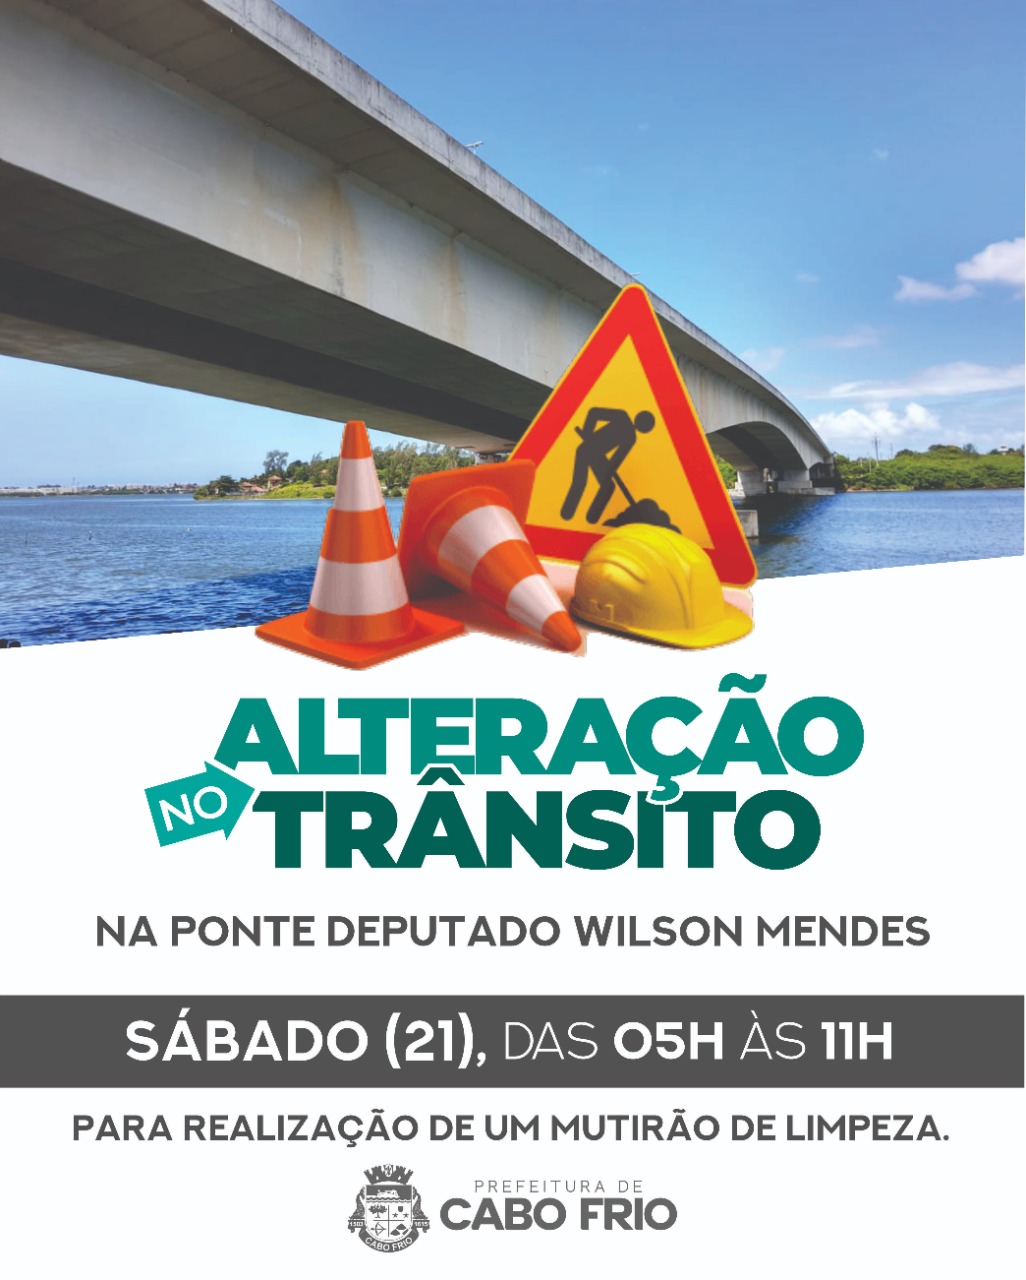 Prefeitura vai interditar parte da Ponte Deputado Wilson Mendes no sábado (21)